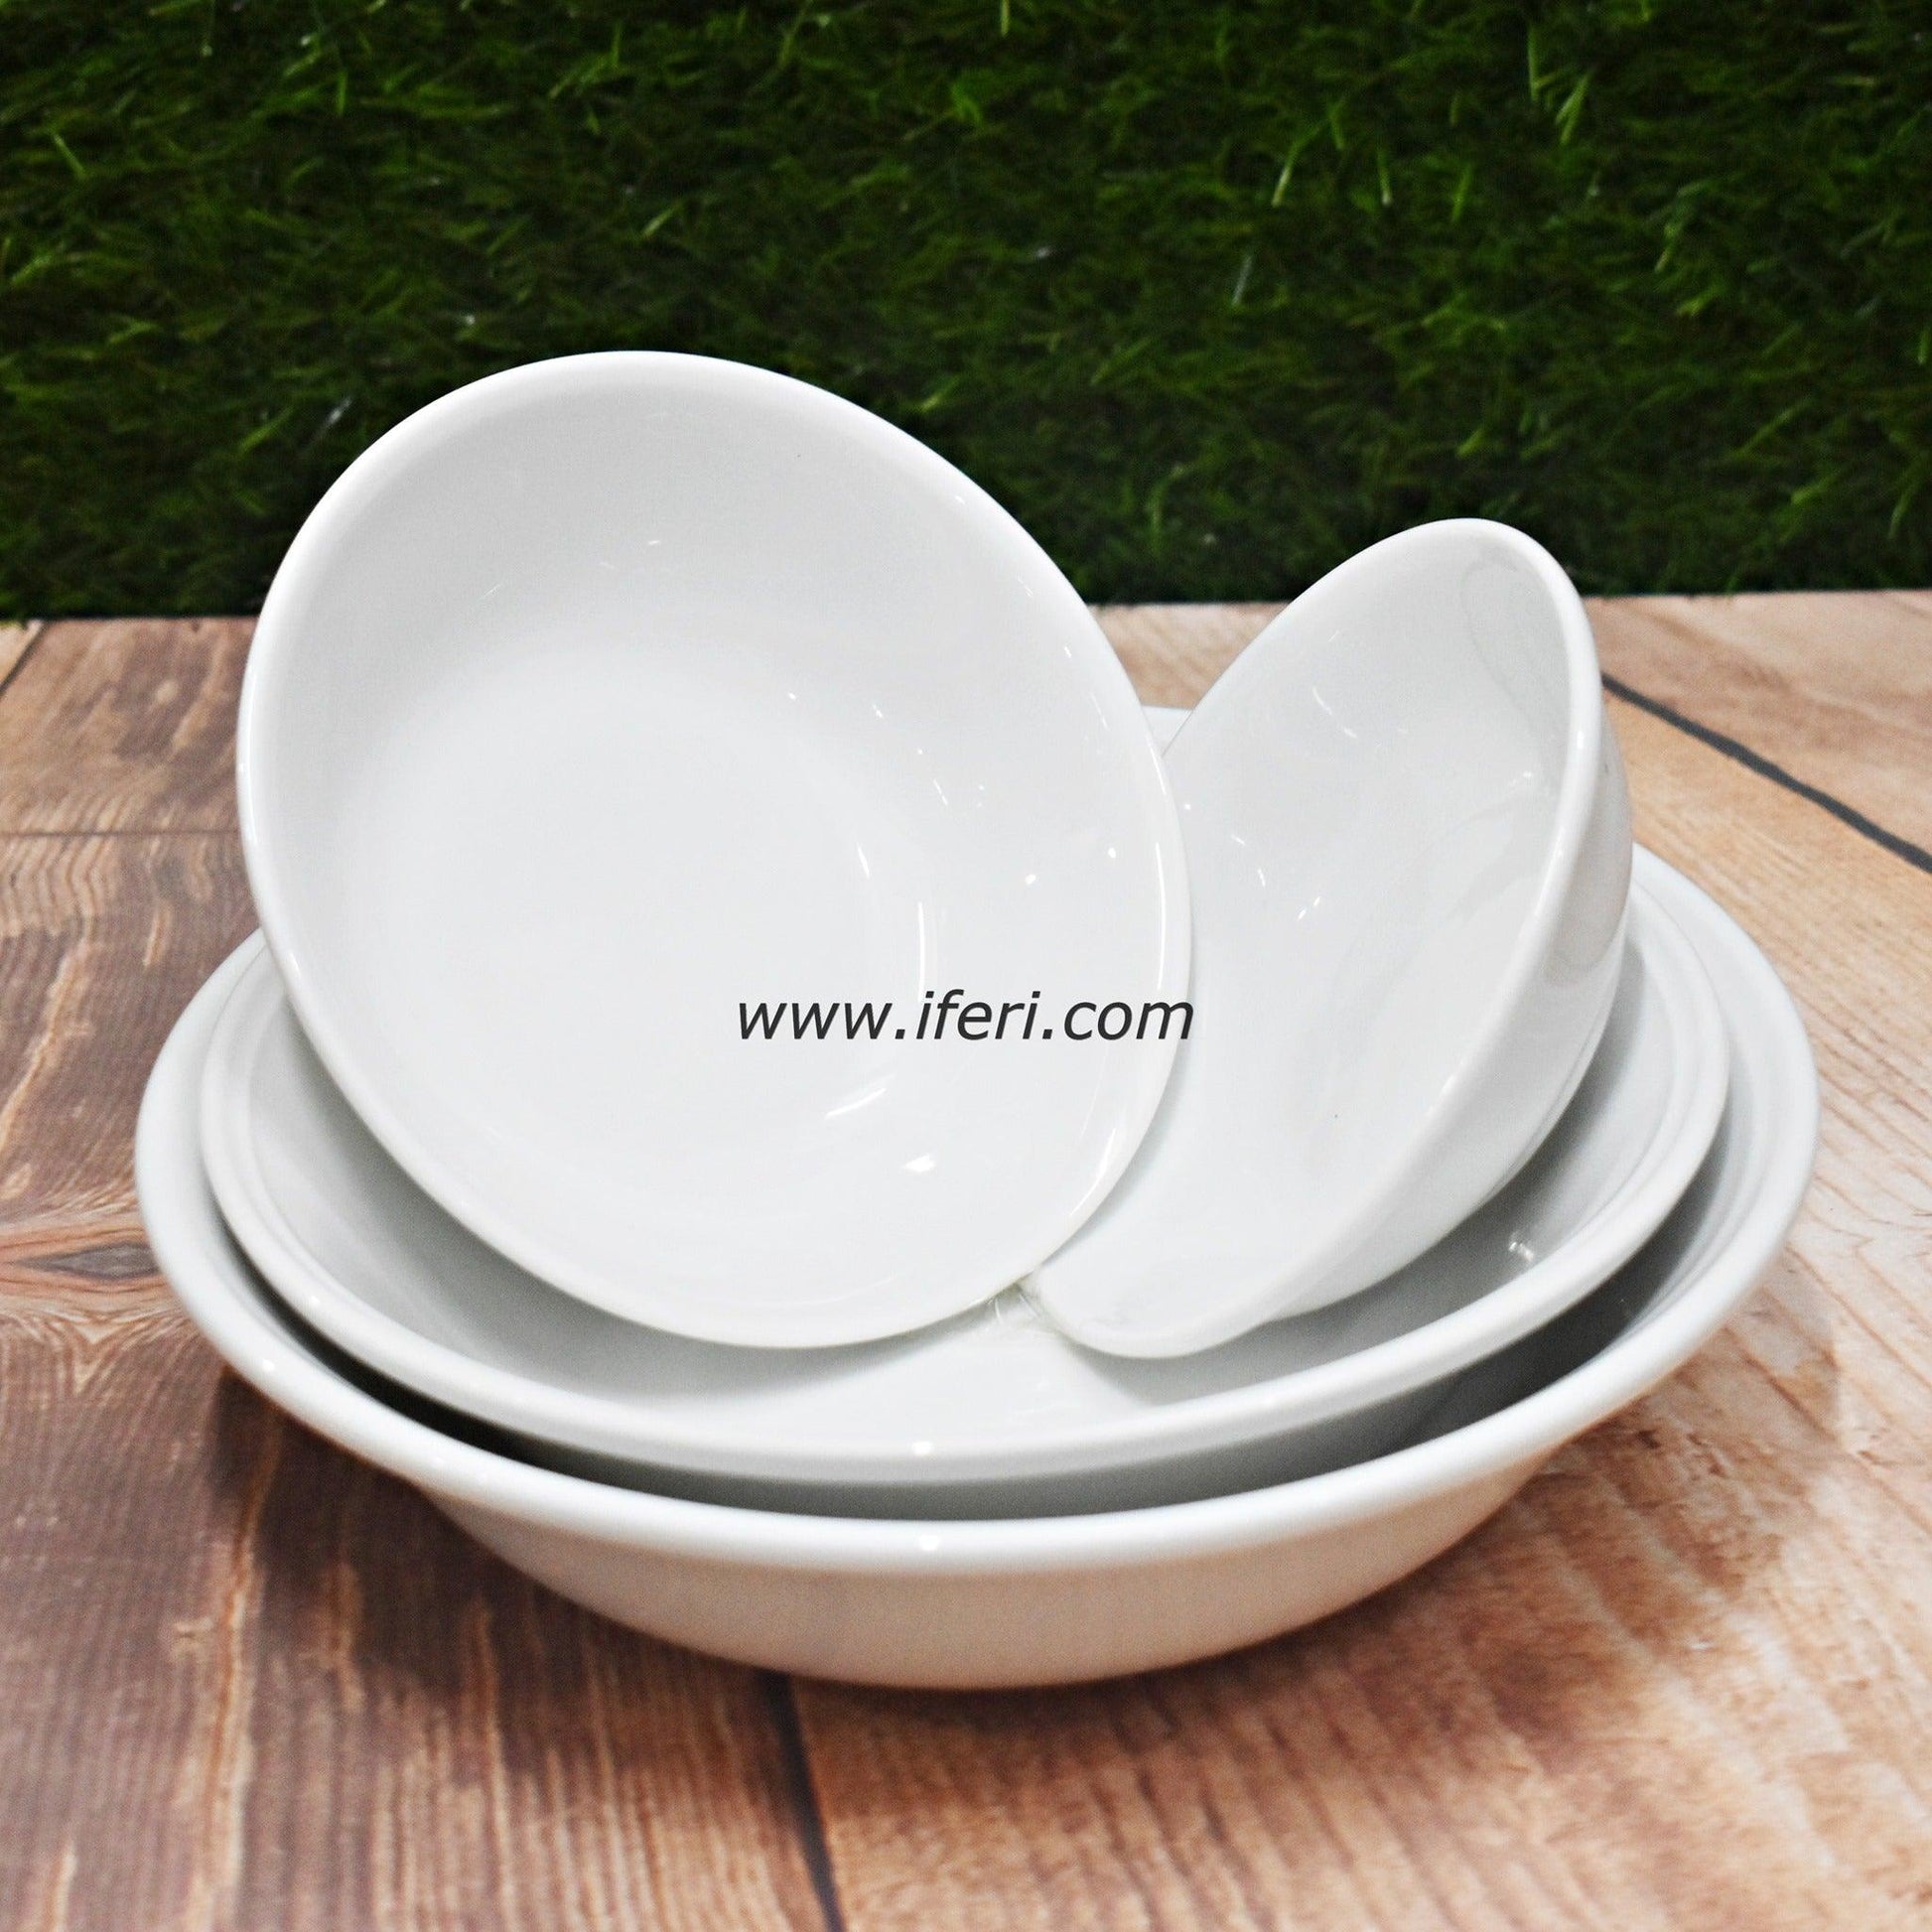 4 pcs White Ceramic Curry Serving Bowl Set SN4884 Price in Bangladesh - iferi.com